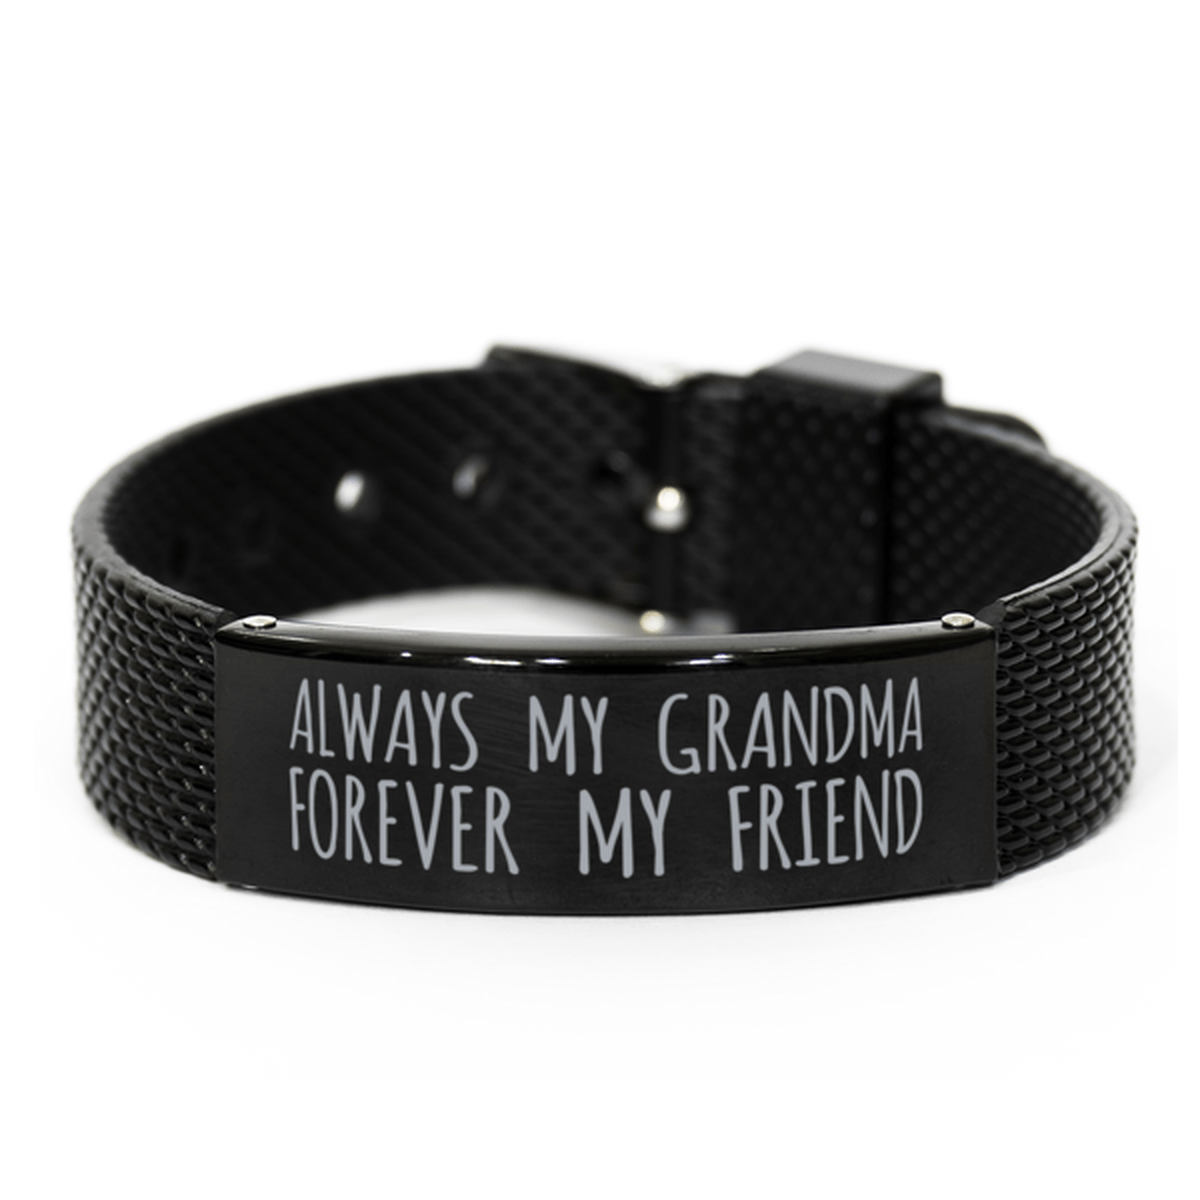 Inspirational Grandma Black Shark Mesh Bracelet, Always My Grandma Forever My Friend, Best Birthday Gifts for Family Friends